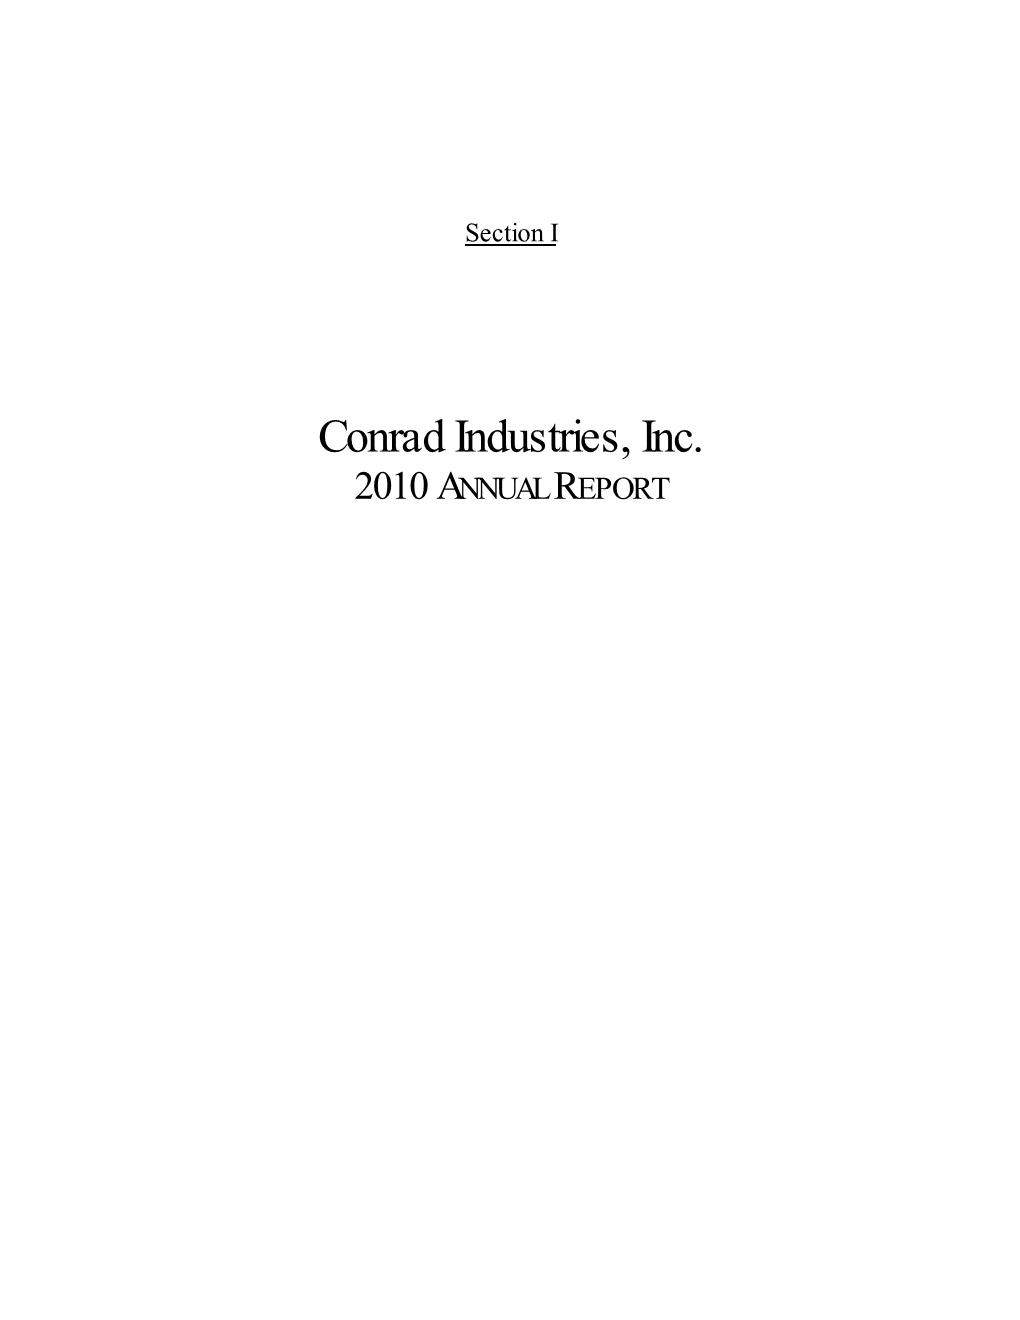 Conrad Industries, Inc. 2010 ANNUAL REPORT